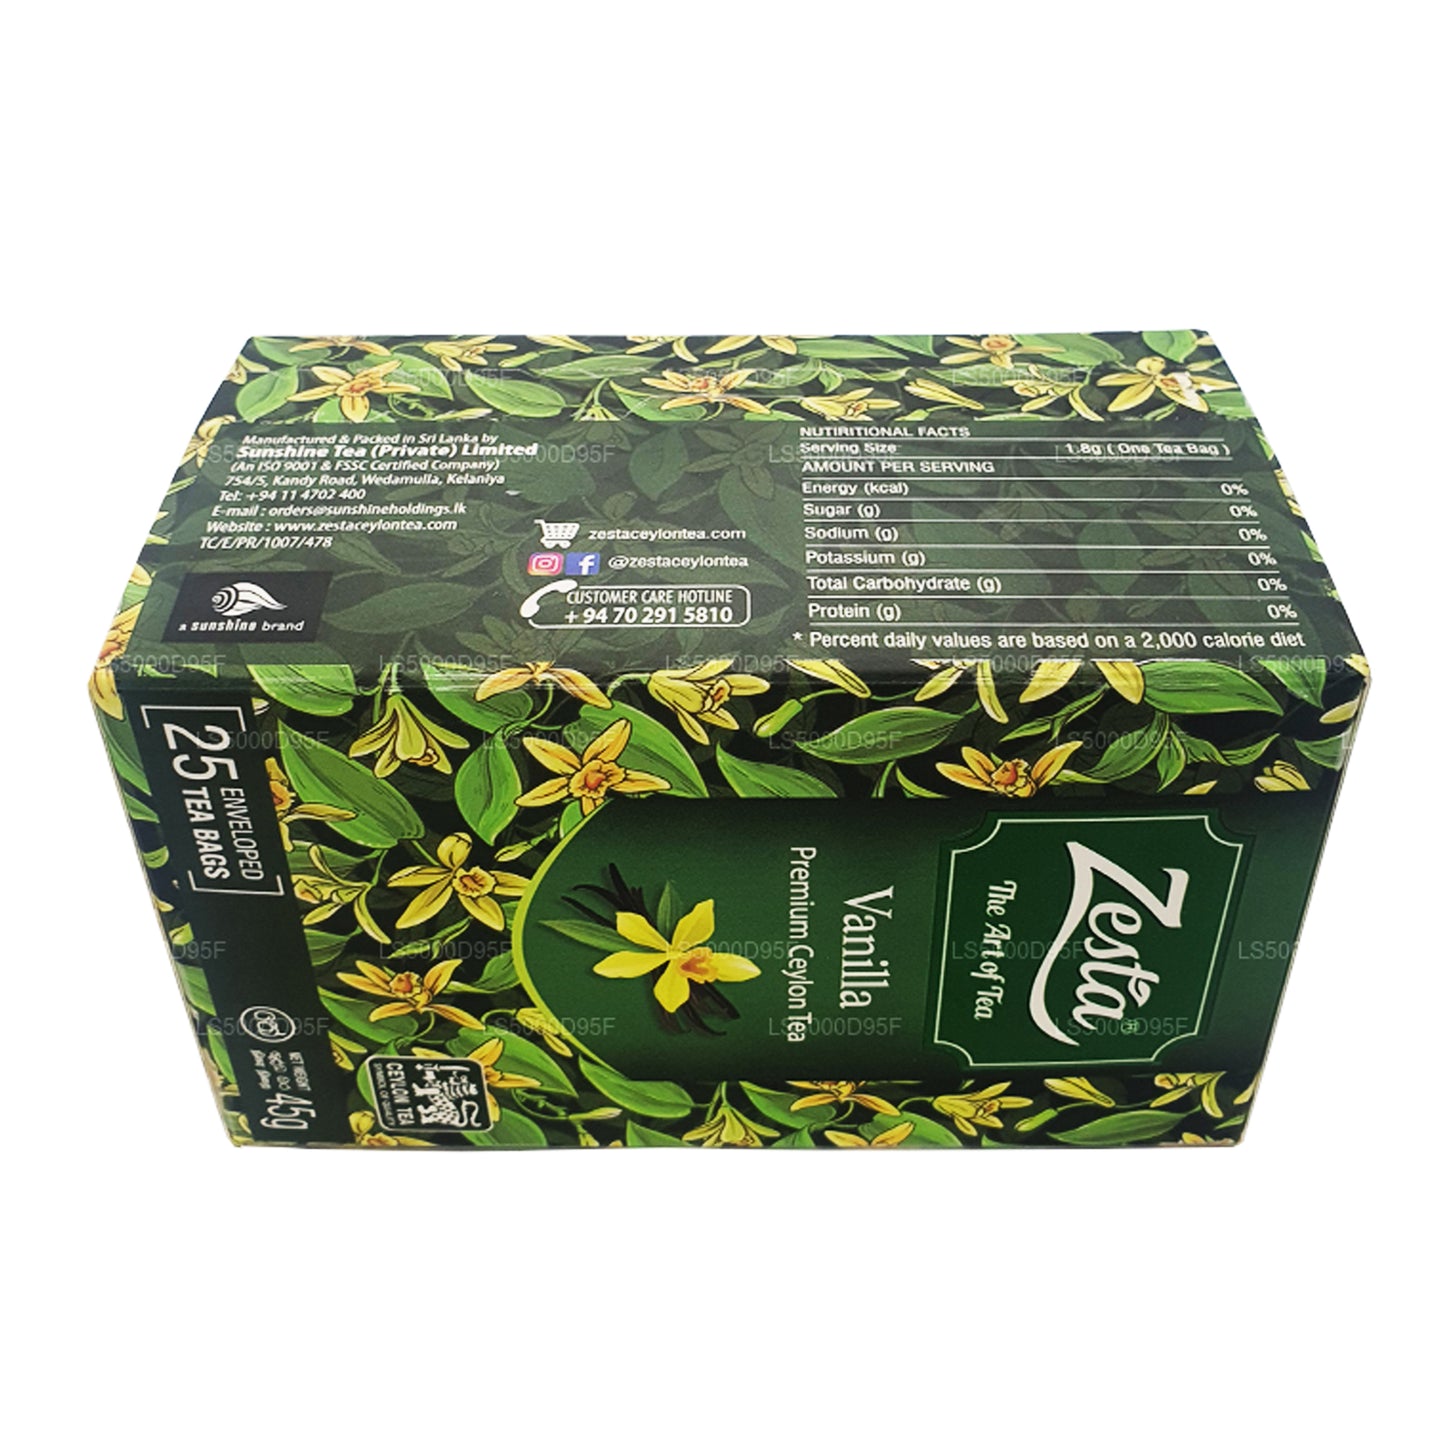 شاي زيستا فانيلا الأسود (45 جم) 25 كيس شاي